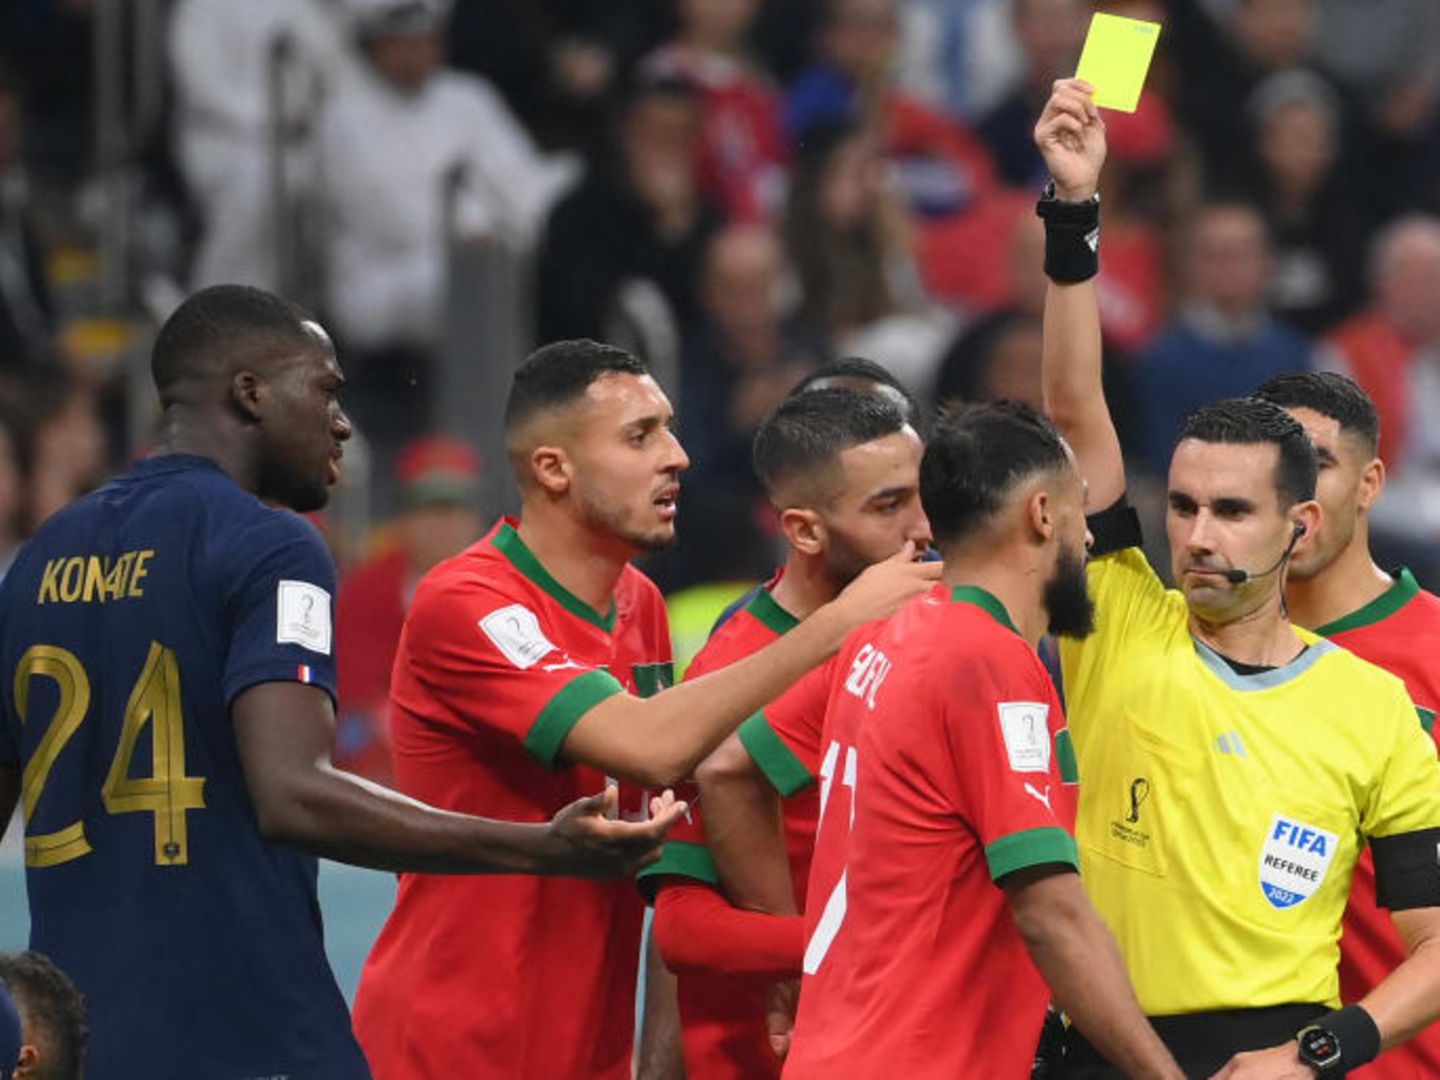 Marokko legt Protest ein Wackelt jetzt das WM-Finale? STERN.de